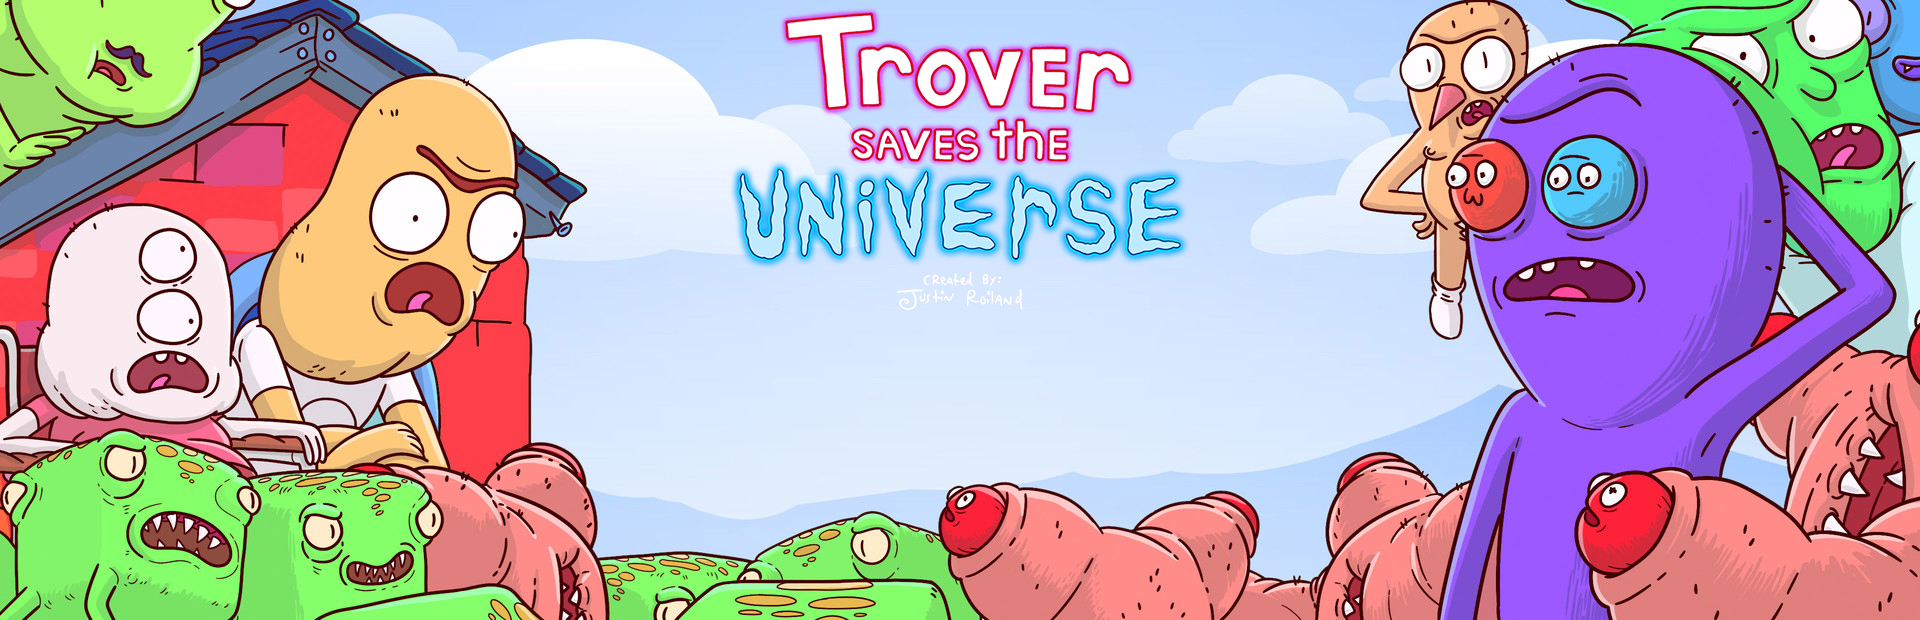 دانلود بازی Trover Saves the Universe برای پی سی | گیمباتو